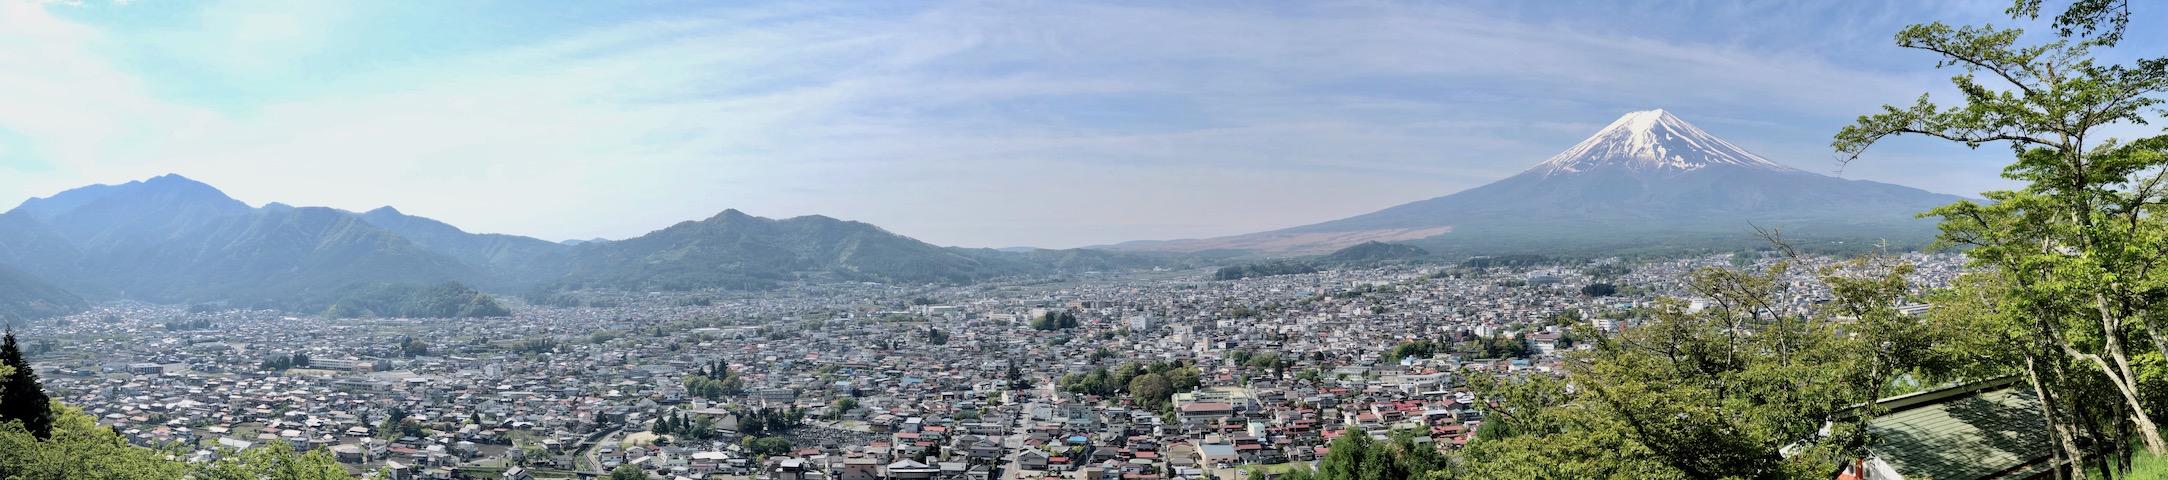 新倉山浅間公園から眺める富士吉田市のパノラマ景色